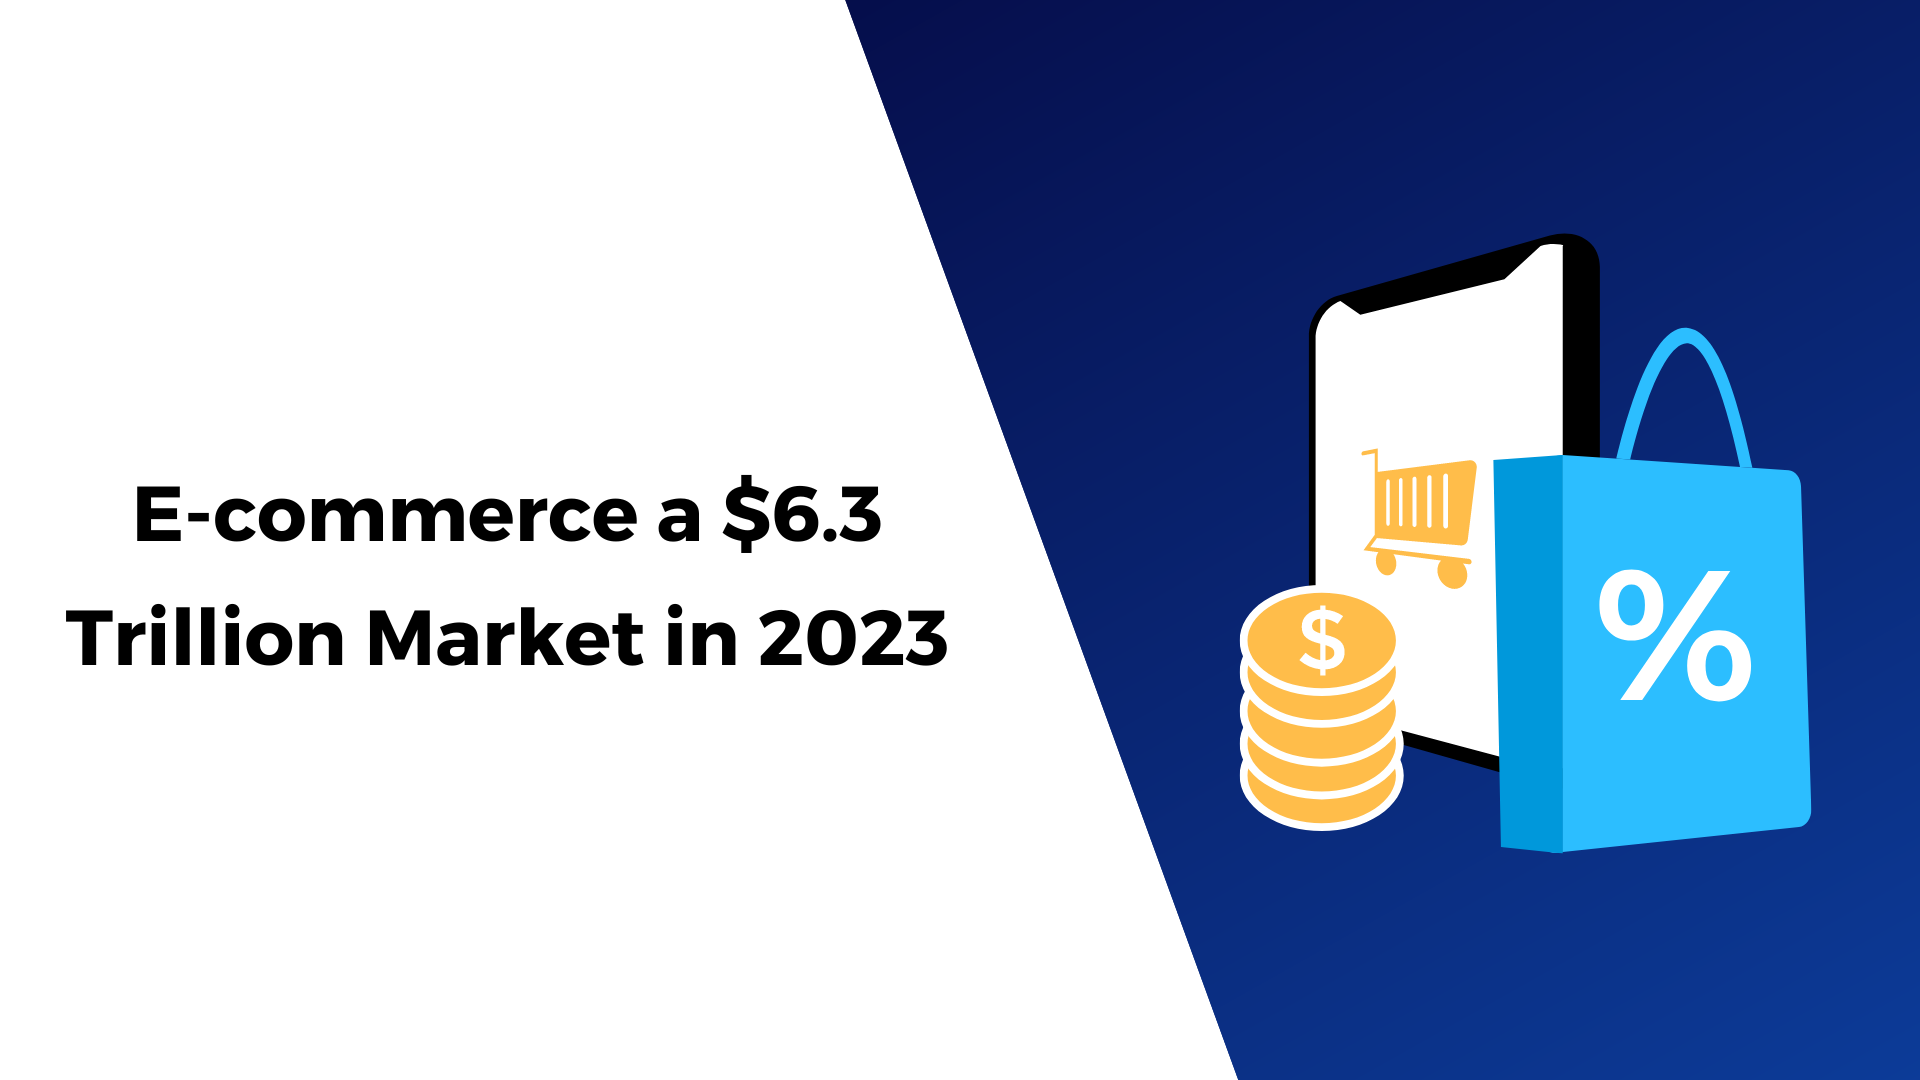 E-commerce a $6.3 Trillion Market in 2023